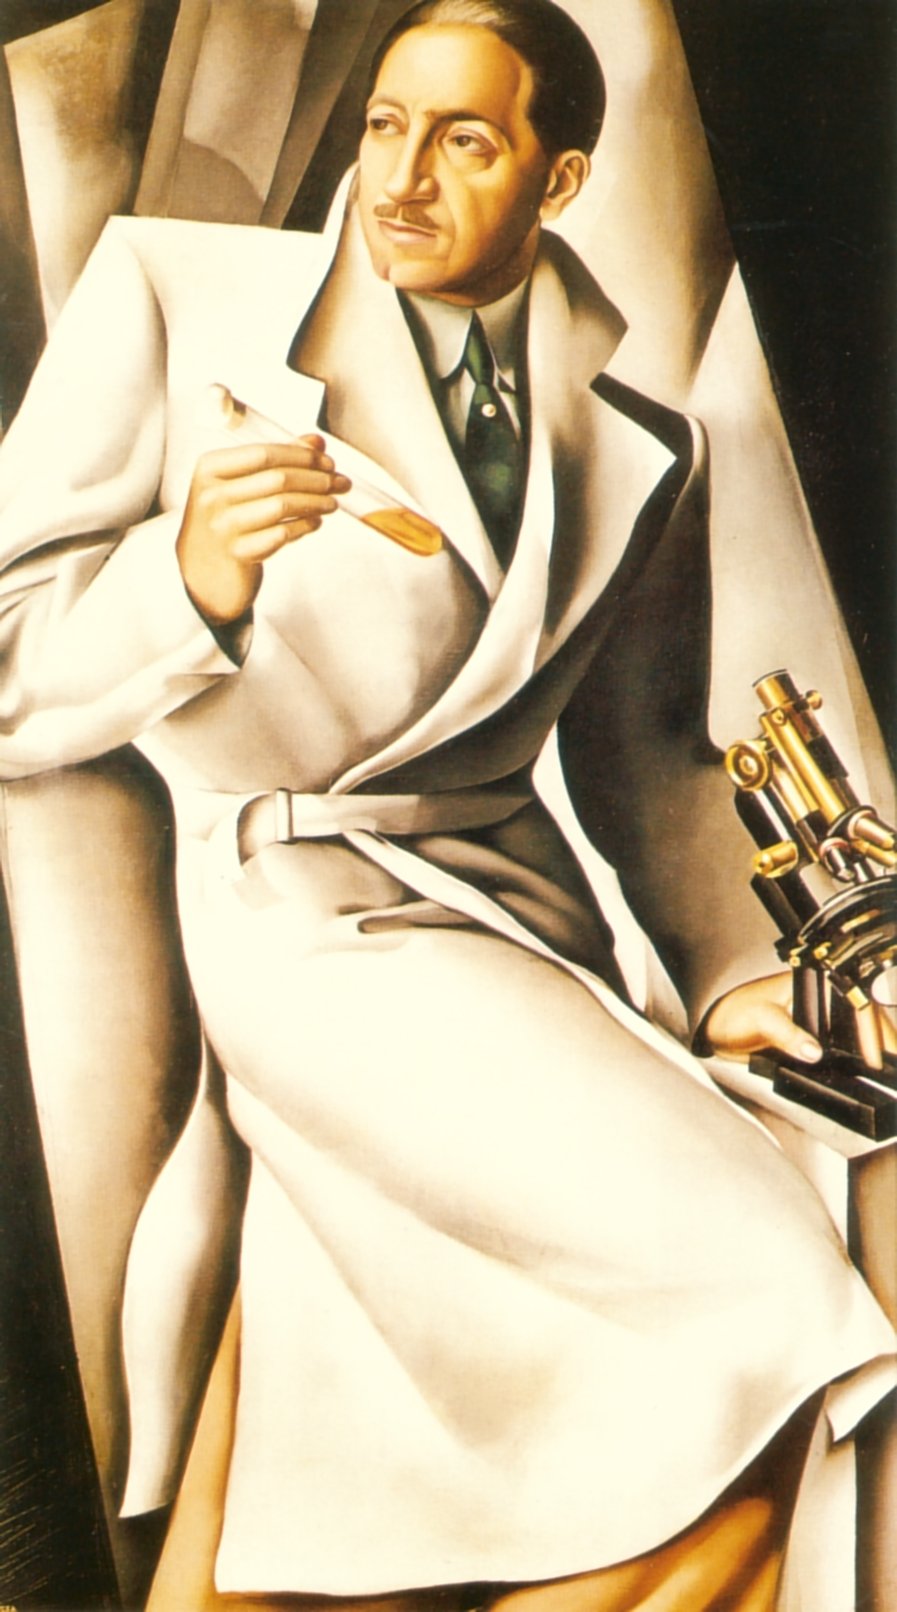 Portrait Of Dr. Boucard by Tamara de Lempicka - 1929 - - private collection